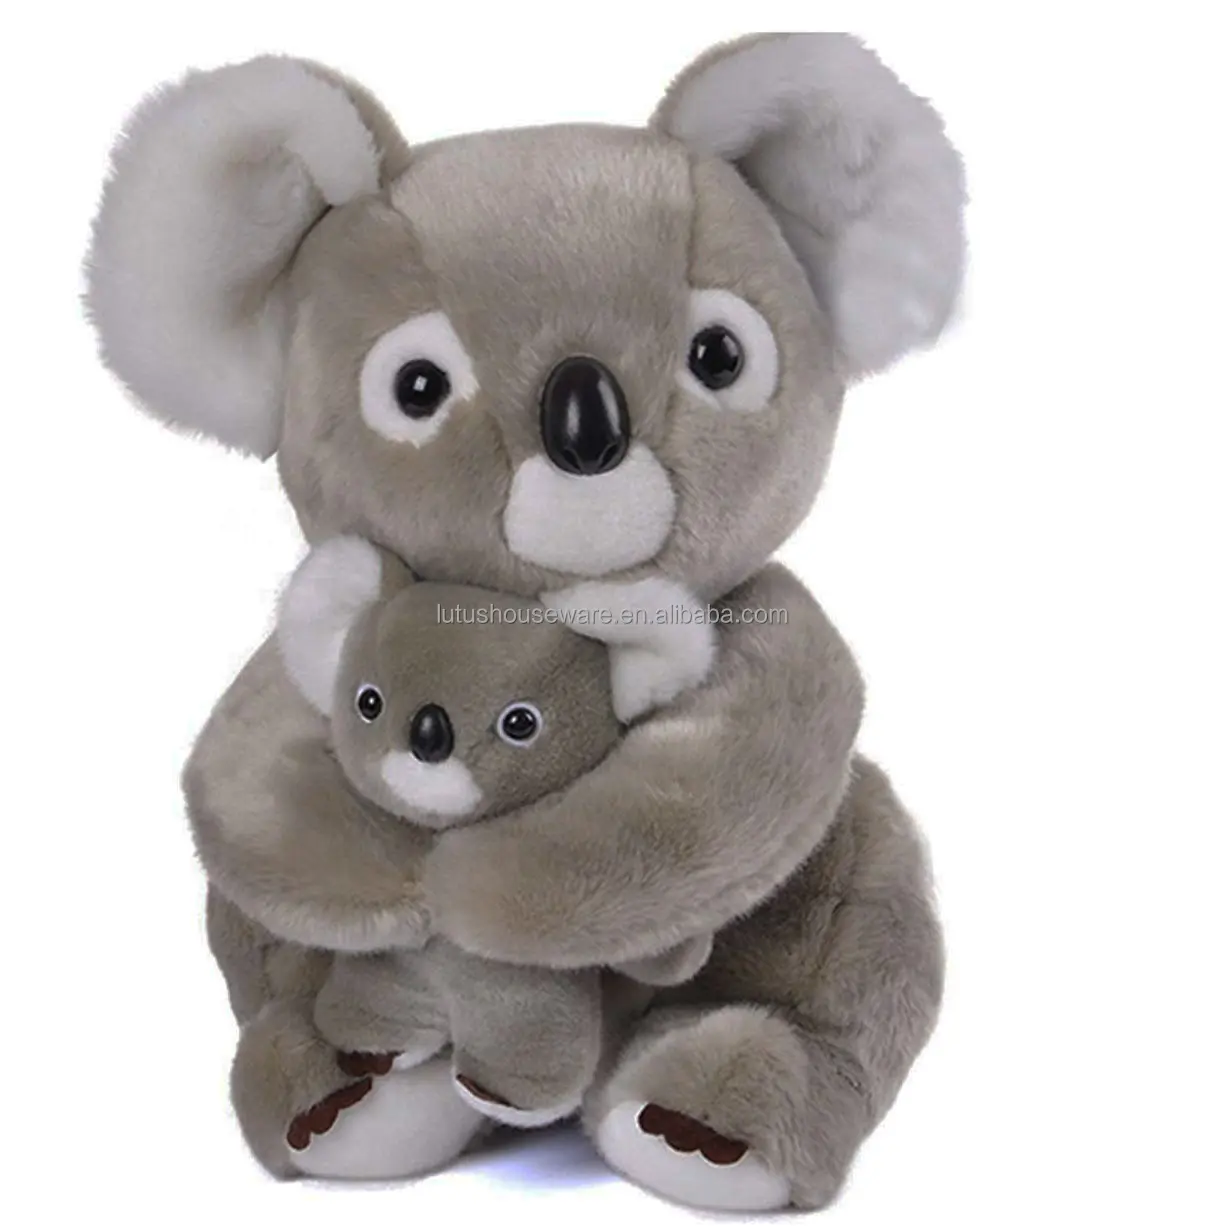 Diskon Besar Mainan Boneka Hewan Koala Mewah Abu-abu Kustom Boneka Binatang Koala Mewah Lucu untuk Hadiah Anak-anak